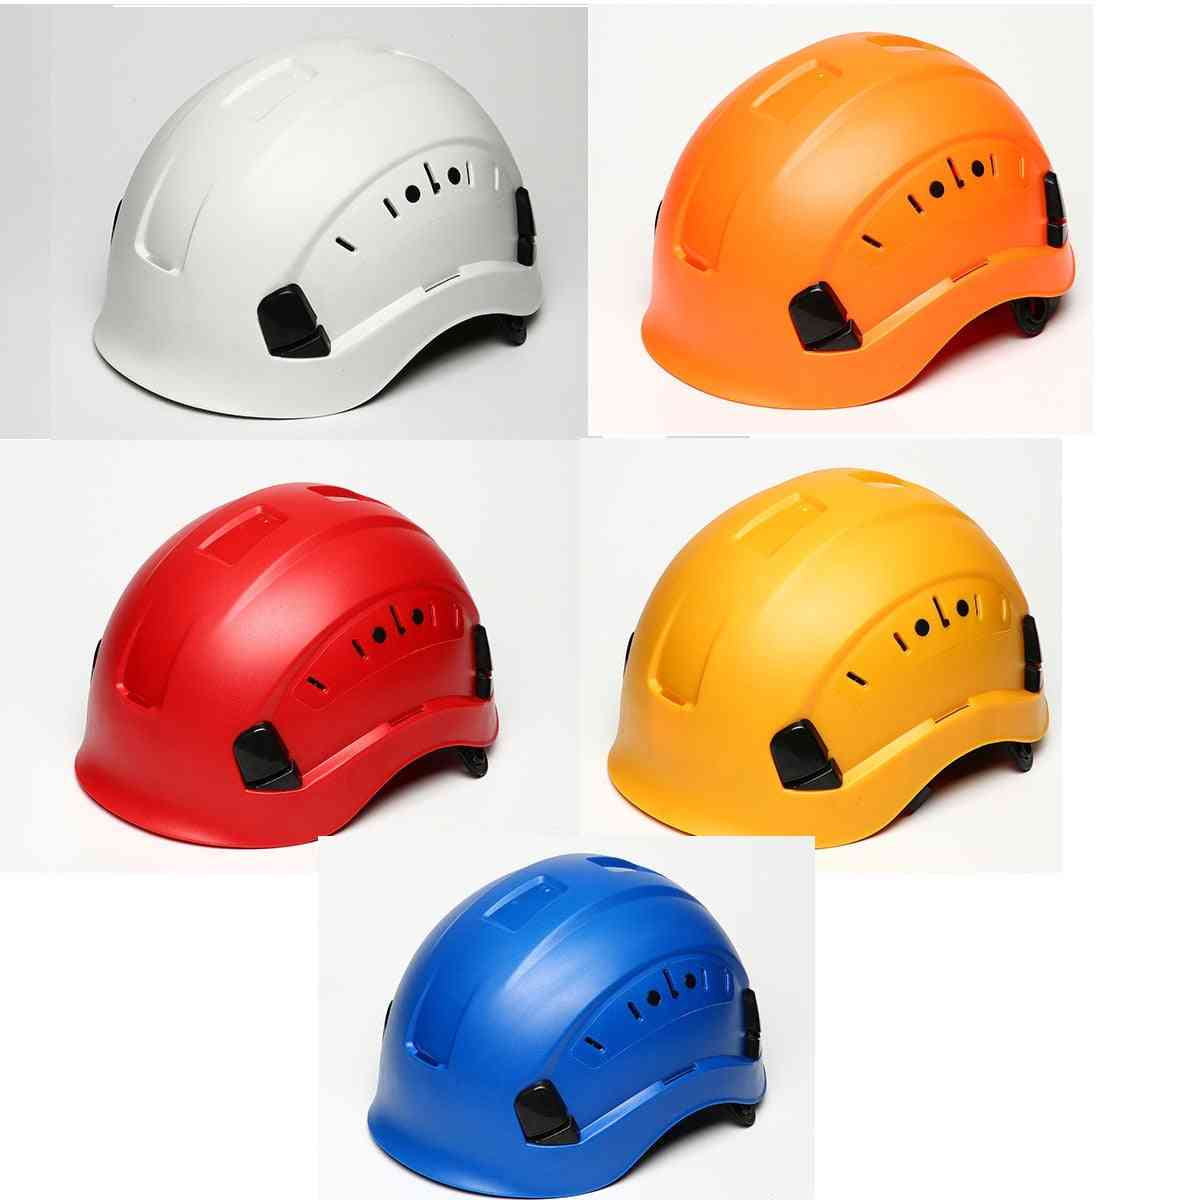 Construcción de casco de seguridad, escalada, steeplejack protector, casco